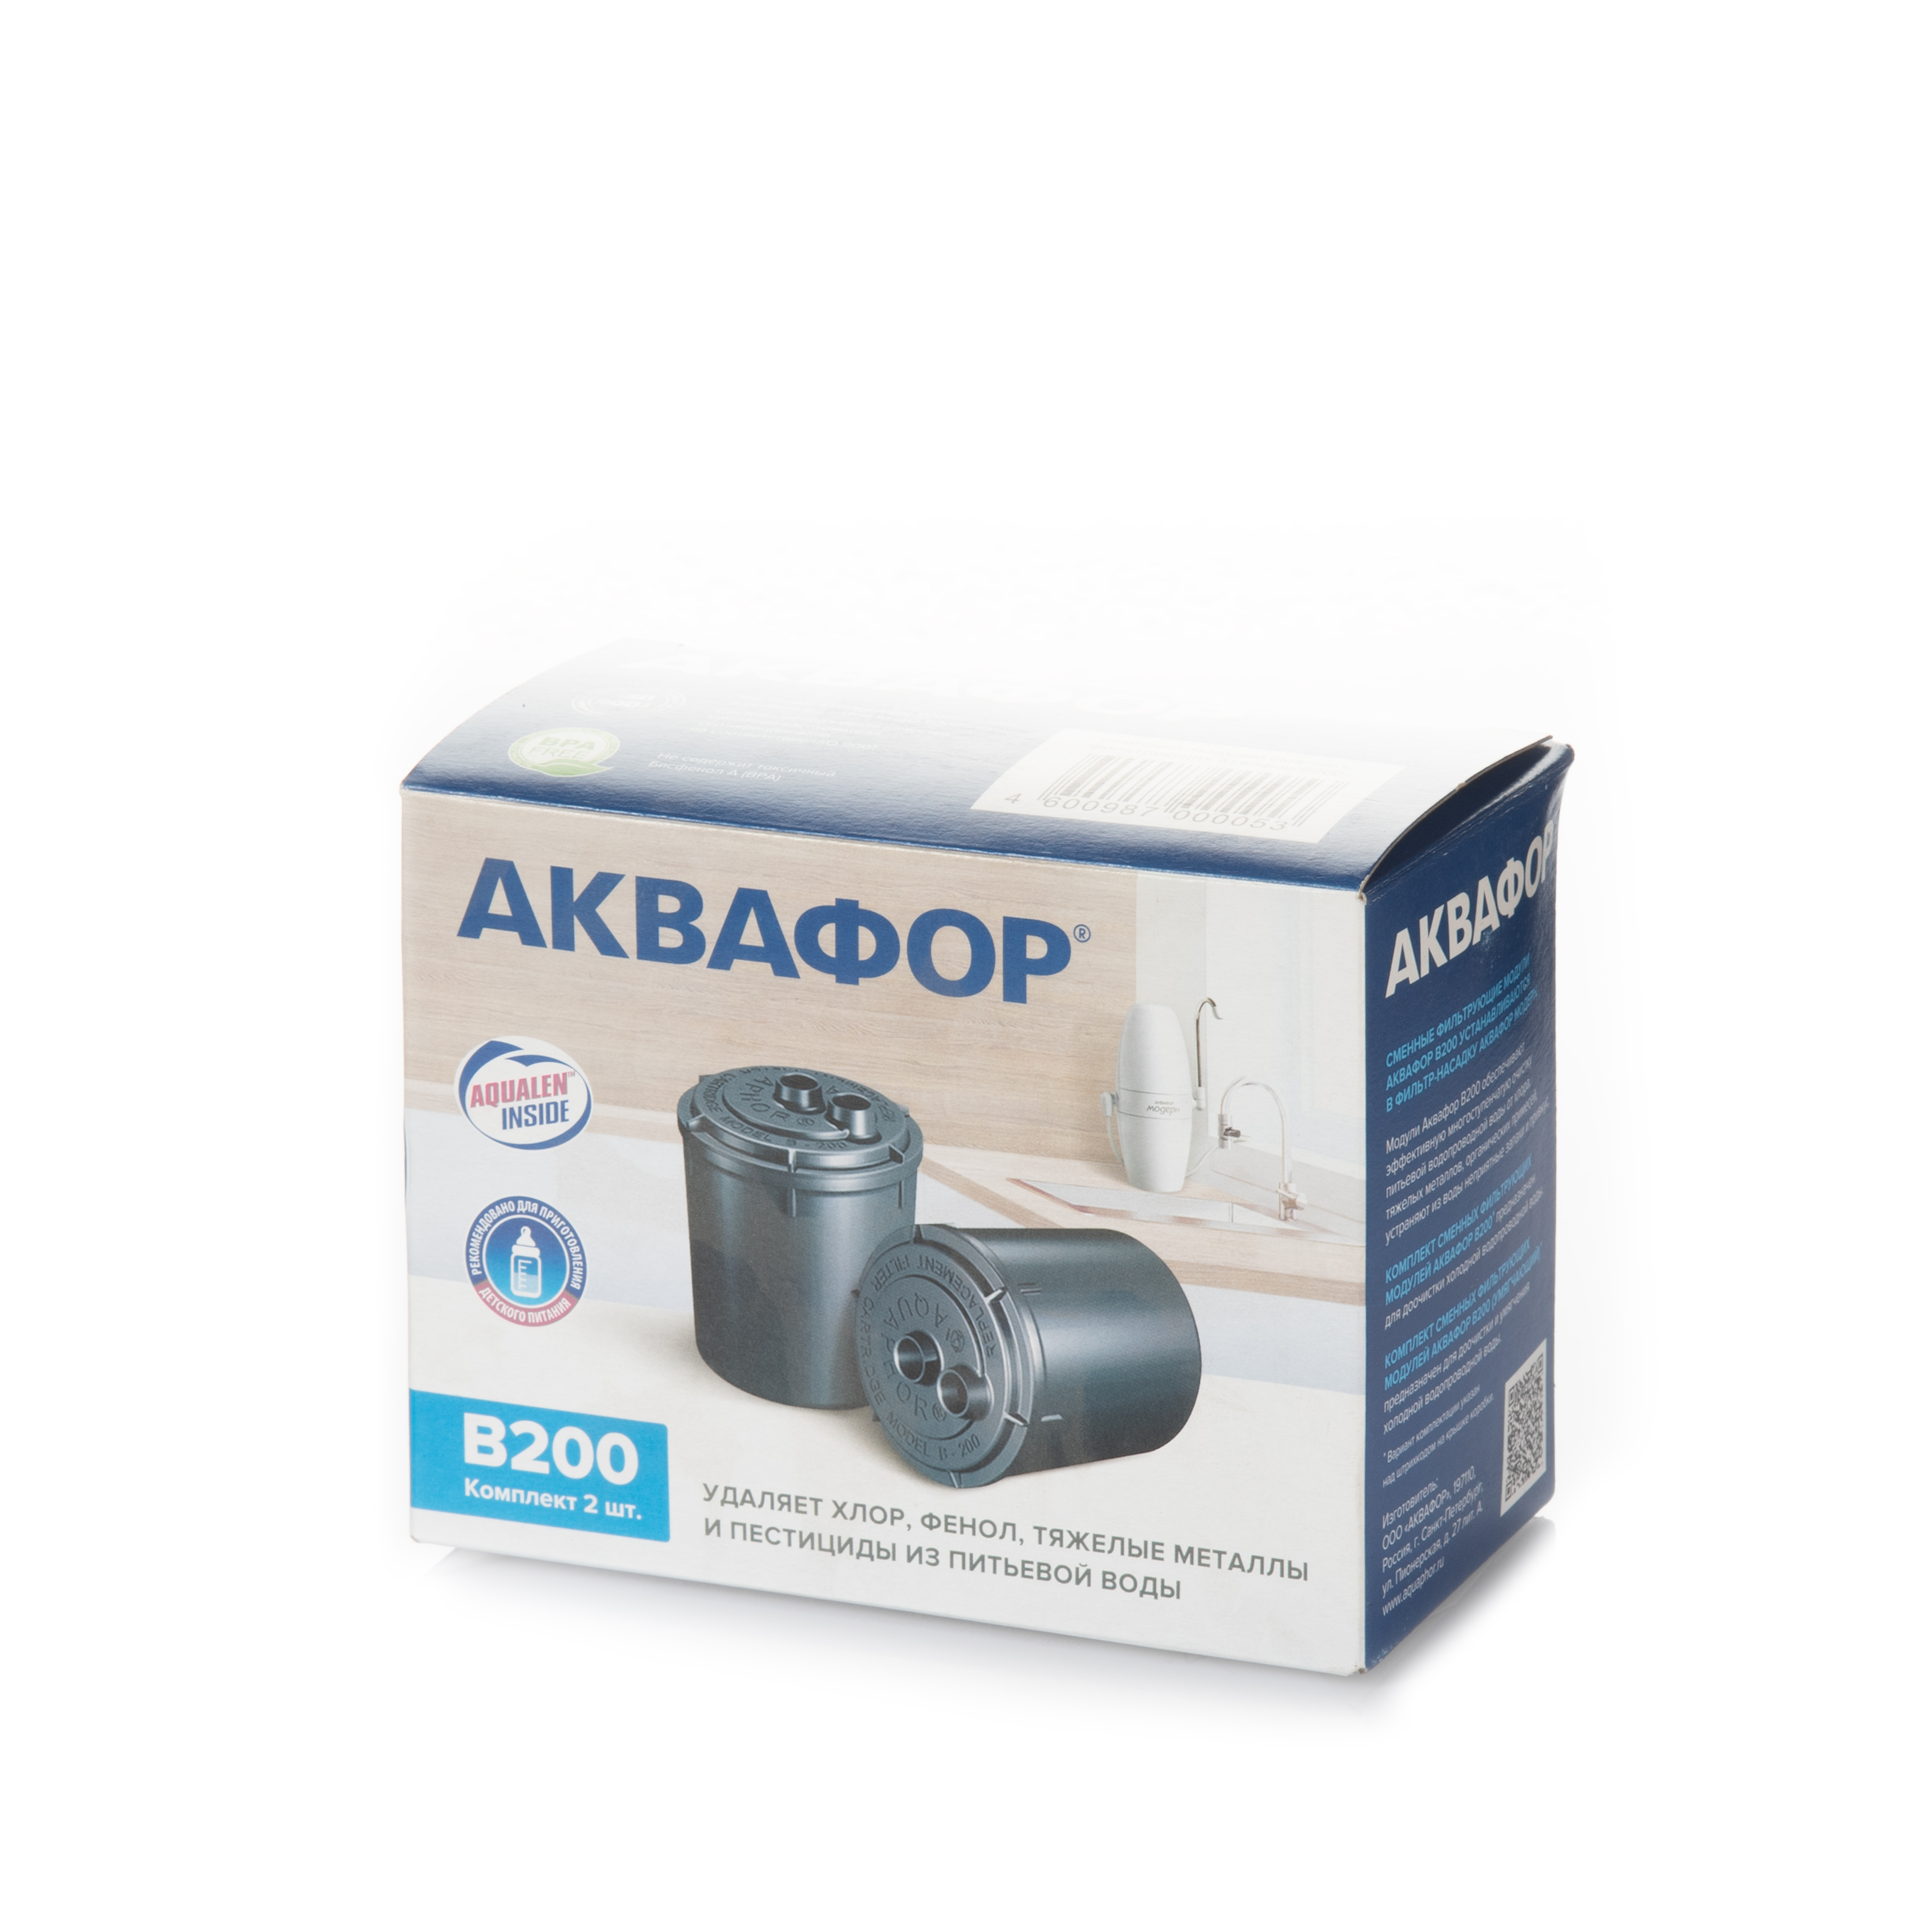 Картридж для фильтра Aquaphor B200 в интернет-магазине, главное фото